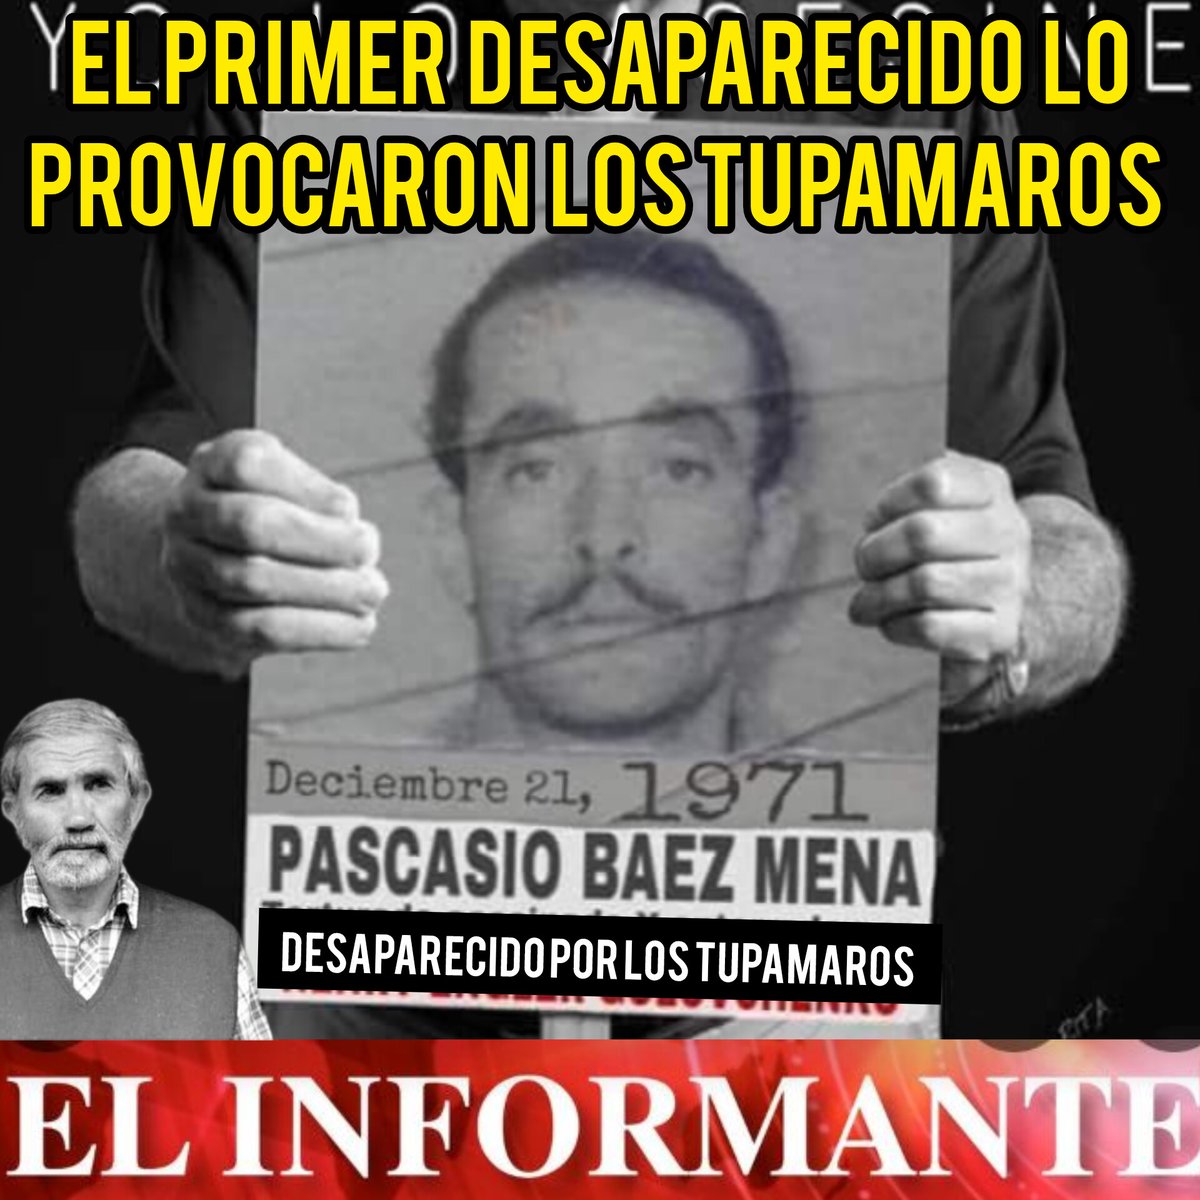 🔴 𝗘𝗹 𝗣𝗥𝗜𝗠𝗘𝗥 𝗗𝗘𝗦𝗔𝗣𝗔𝗥𝗘𝗖𝗜𝗗𝗢 𝗹𝗼 𝗣𝗥𝗢𝗩𝗢𝗖𝗔𝗥𝗢𝗡 𝗹𝗼𝘀 𝗧𝗨𝗣𝗔𝗠𝗔𝗥𝗢𝗦 ▶️ El 21 de diciembre de 1971, Ramón Pascasio Báez Mena, un peón rural uruguayo, fue apresados, torturado y asesinado por la banda terrorista Tupamaros (hoy MPP LISTA 609).